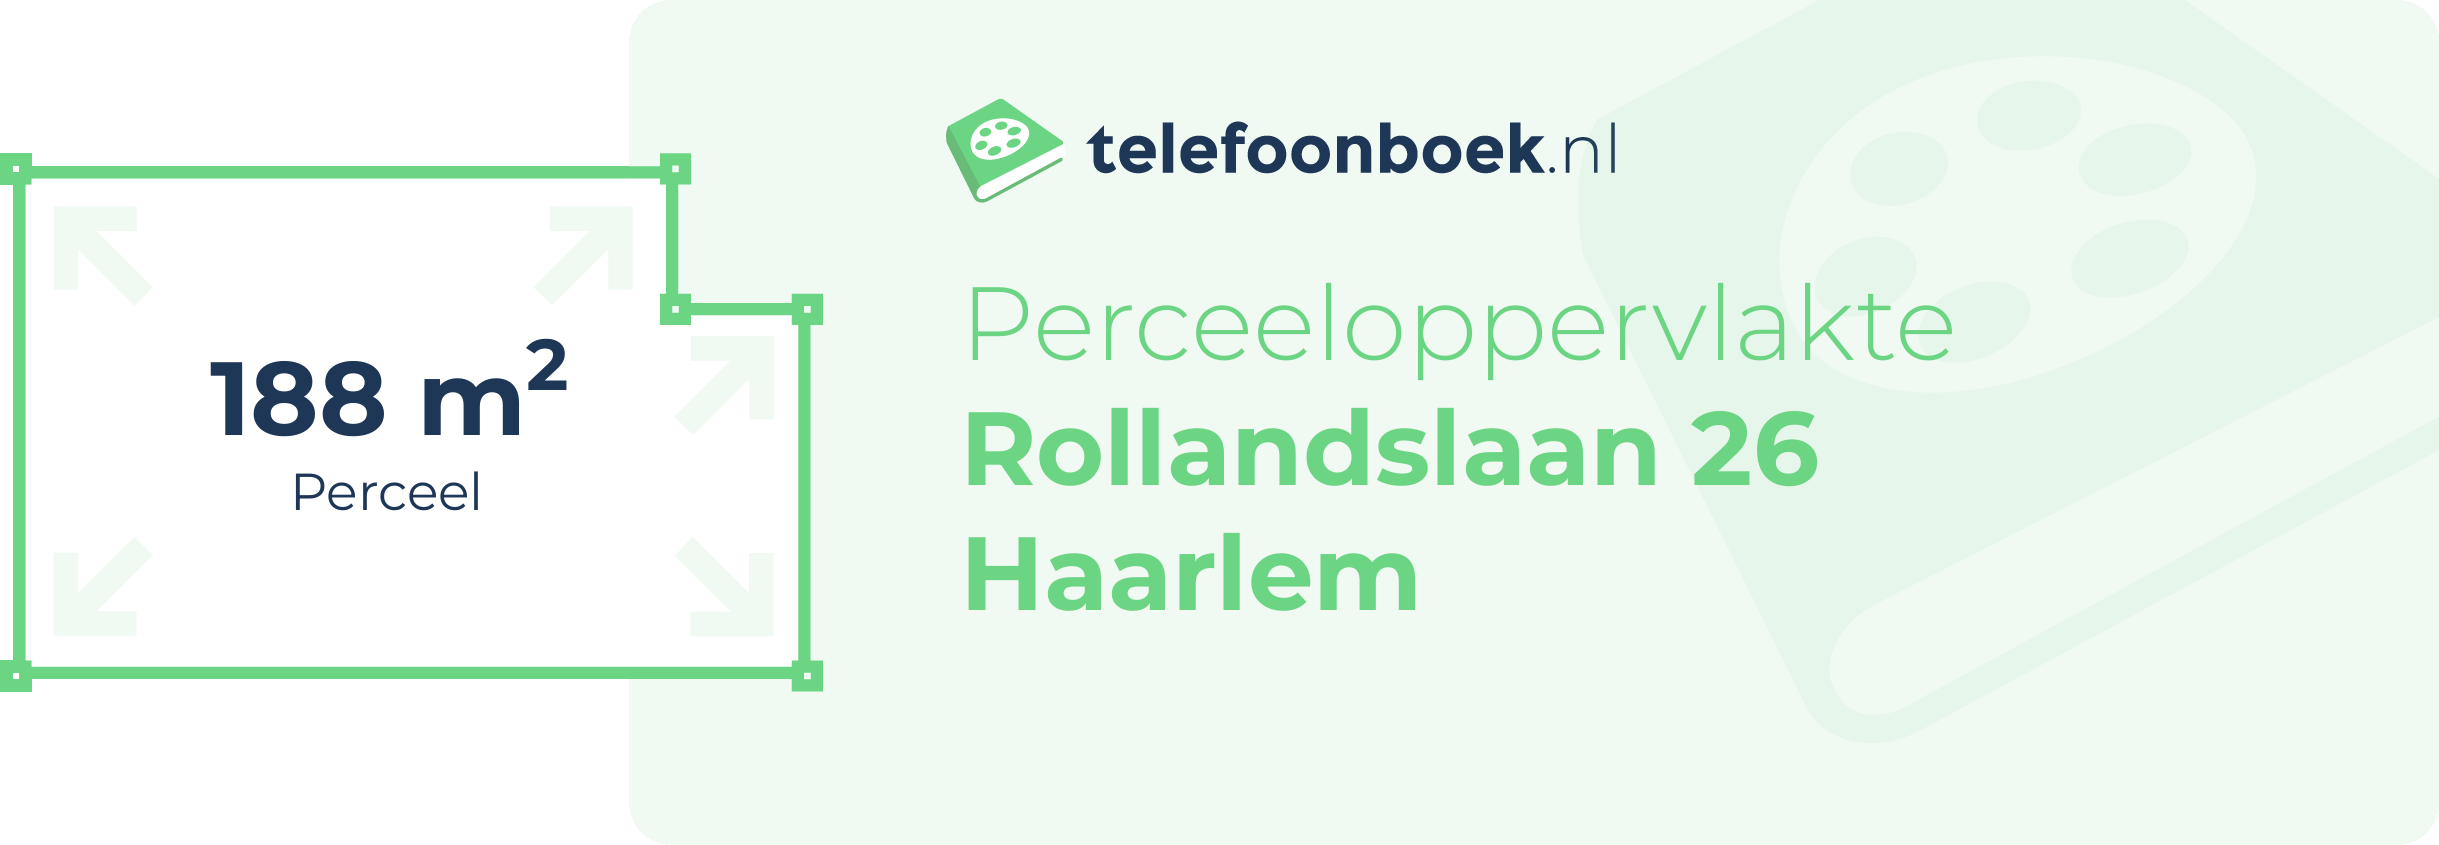 Perceeloppervlakte Rollandslaan 26 Haarlem